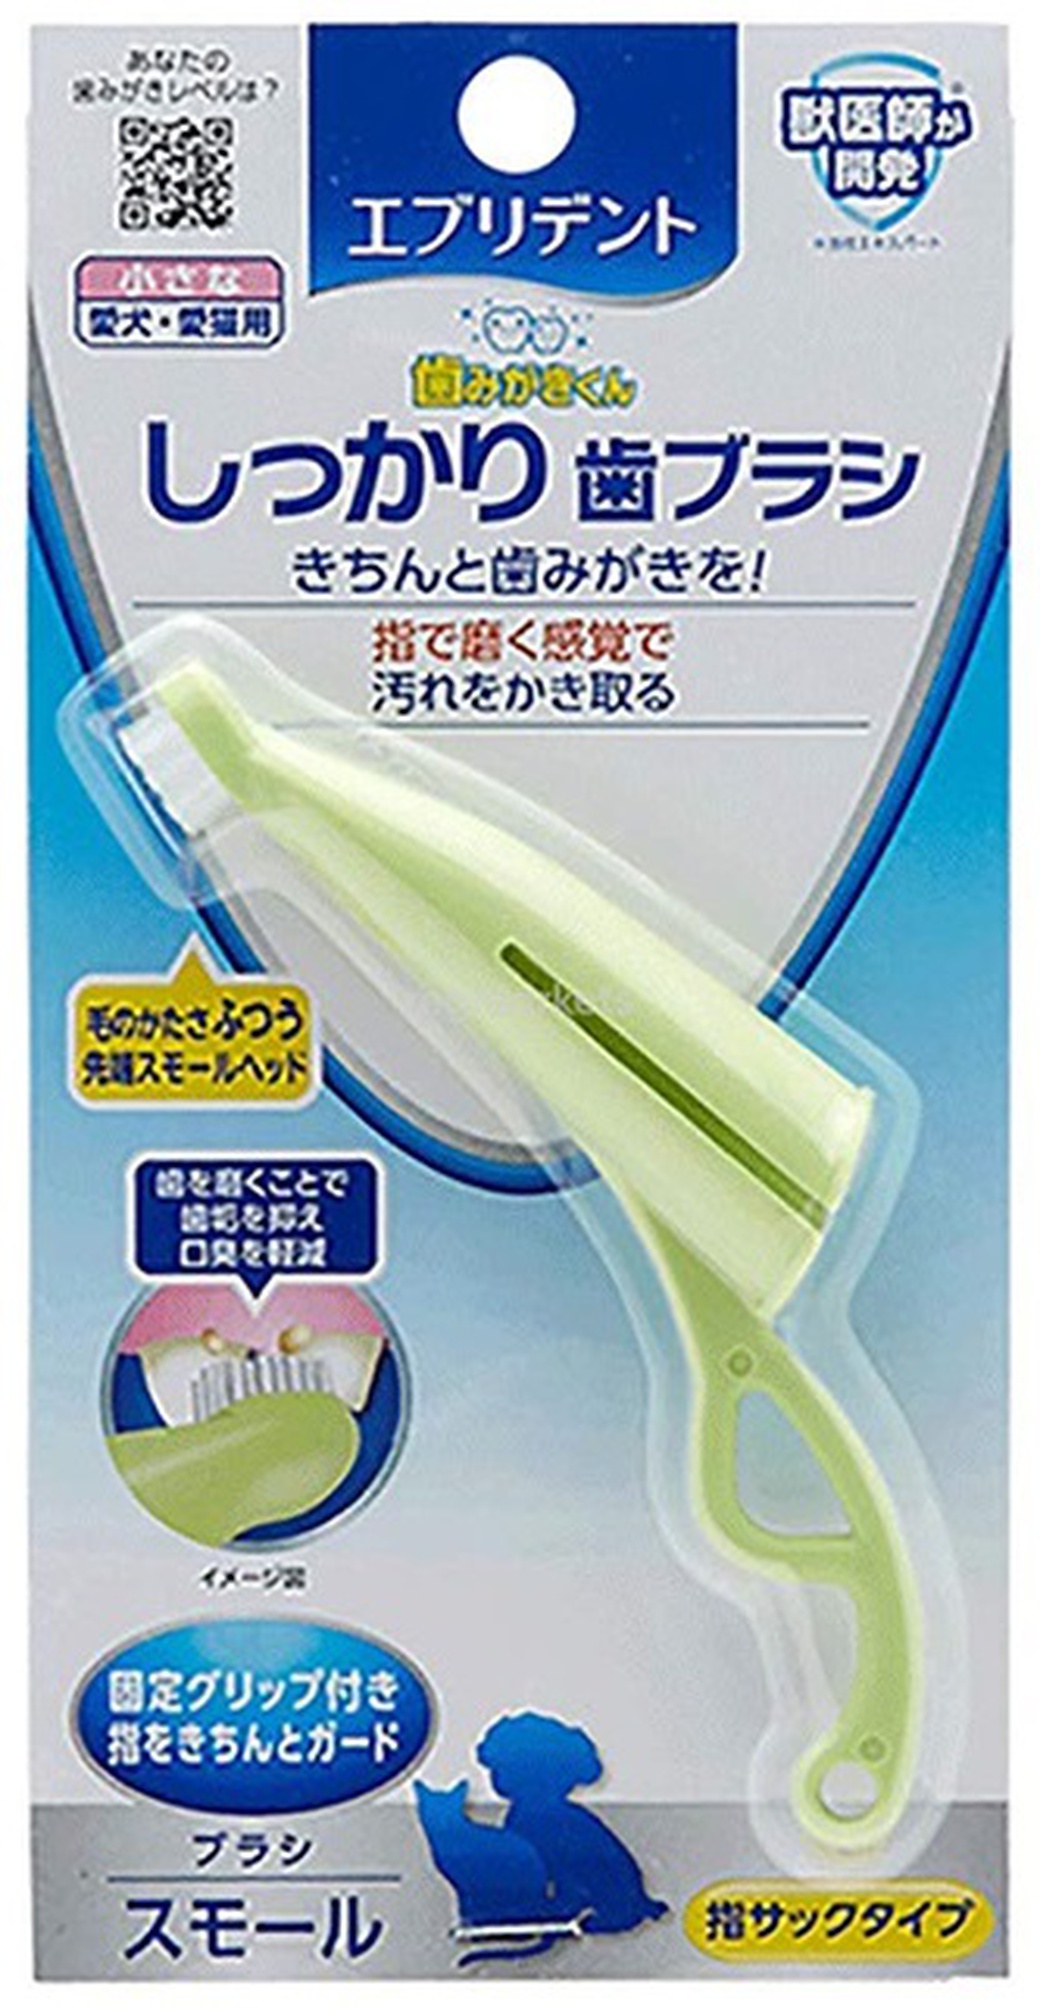 Анатомическая Зубная щетка Japan Premium Pet с ручкой для снятия налета для собак мелких пород фото